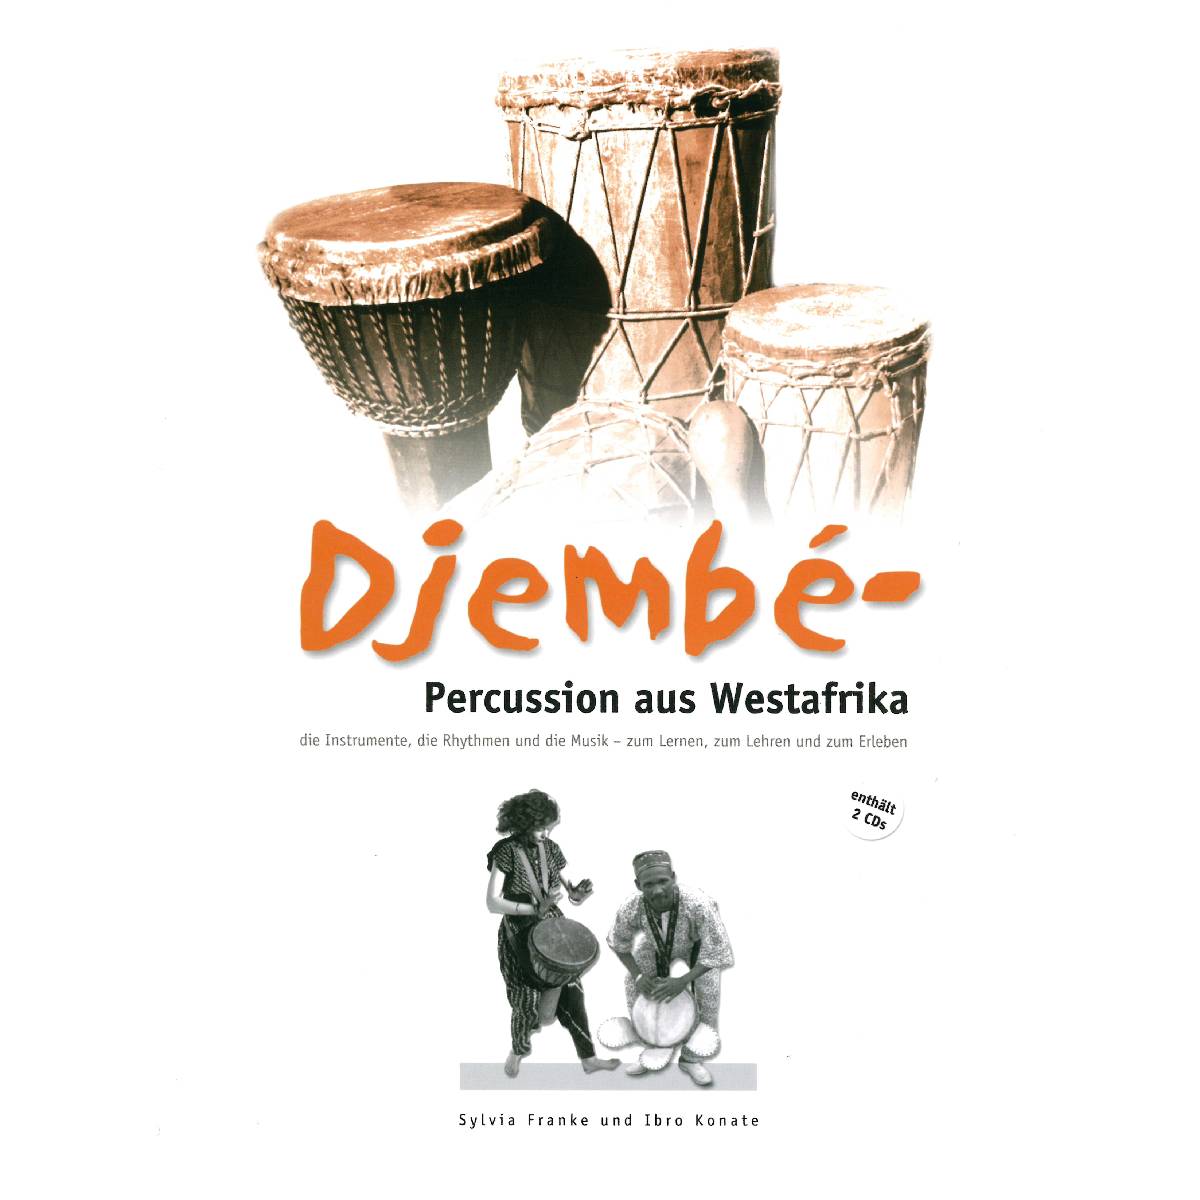 Djembé – Percussion aus Westafrika | Perkussion | Dunum.ch